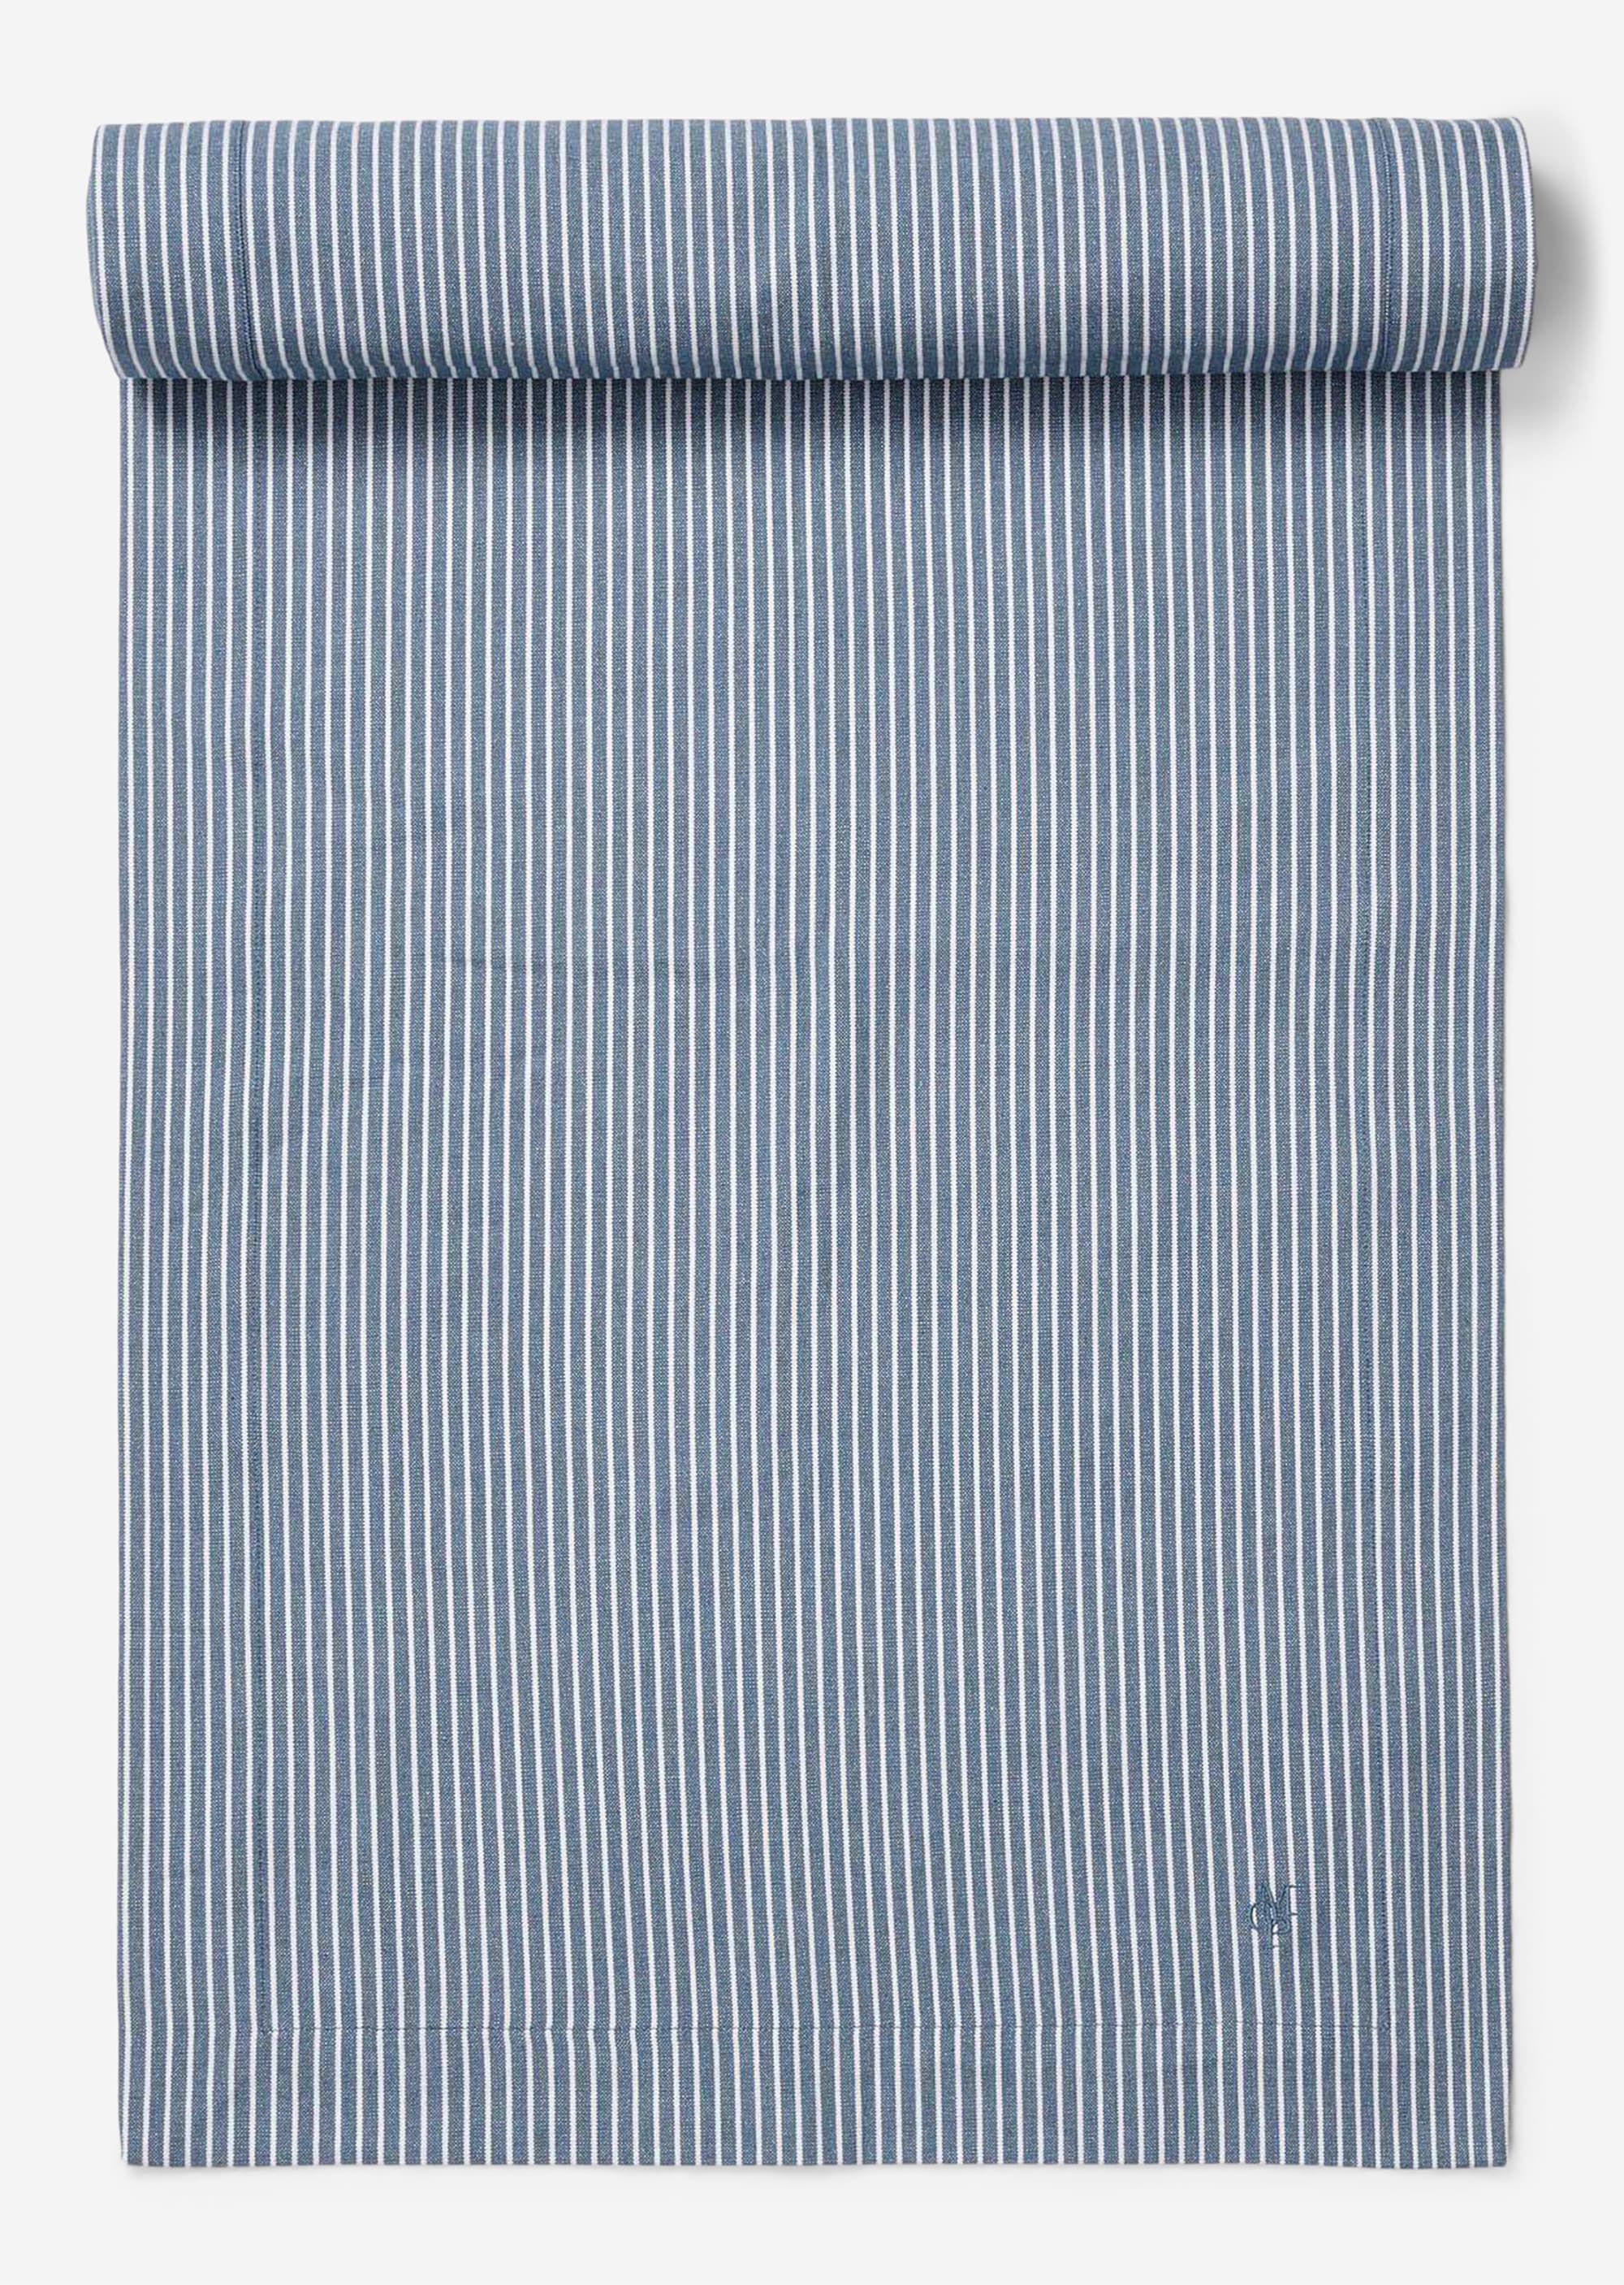 Tischläufer Modell TENSTRA aus Organic-Cotton - blau | KÜCHE | MARC O\'POLO